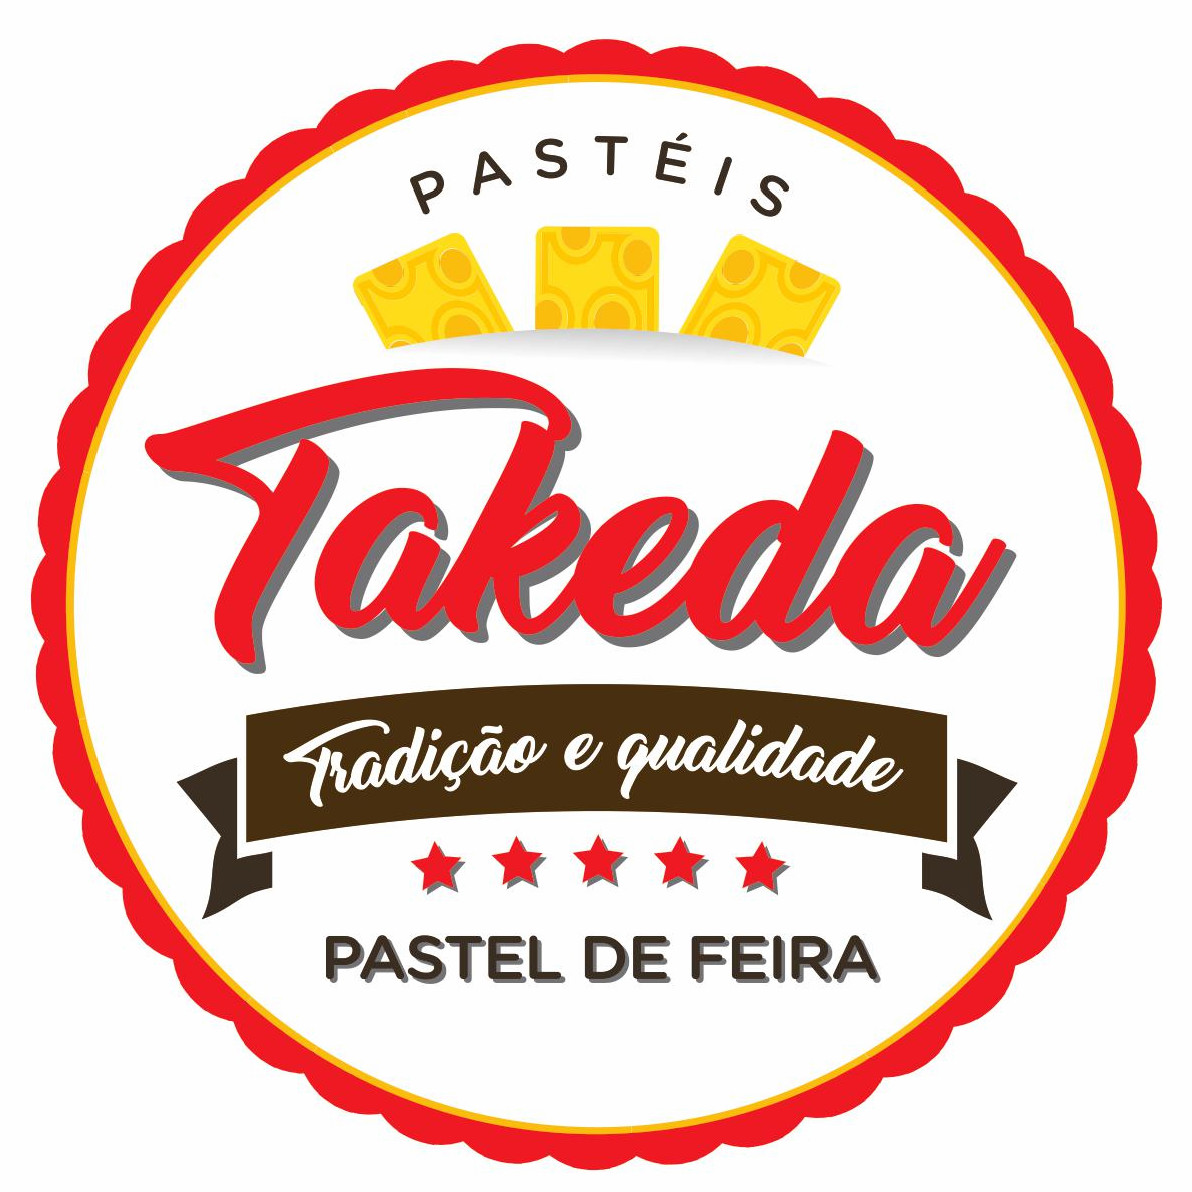 Logo restaurante Estamos no ifood! "Pasteis Takeda"